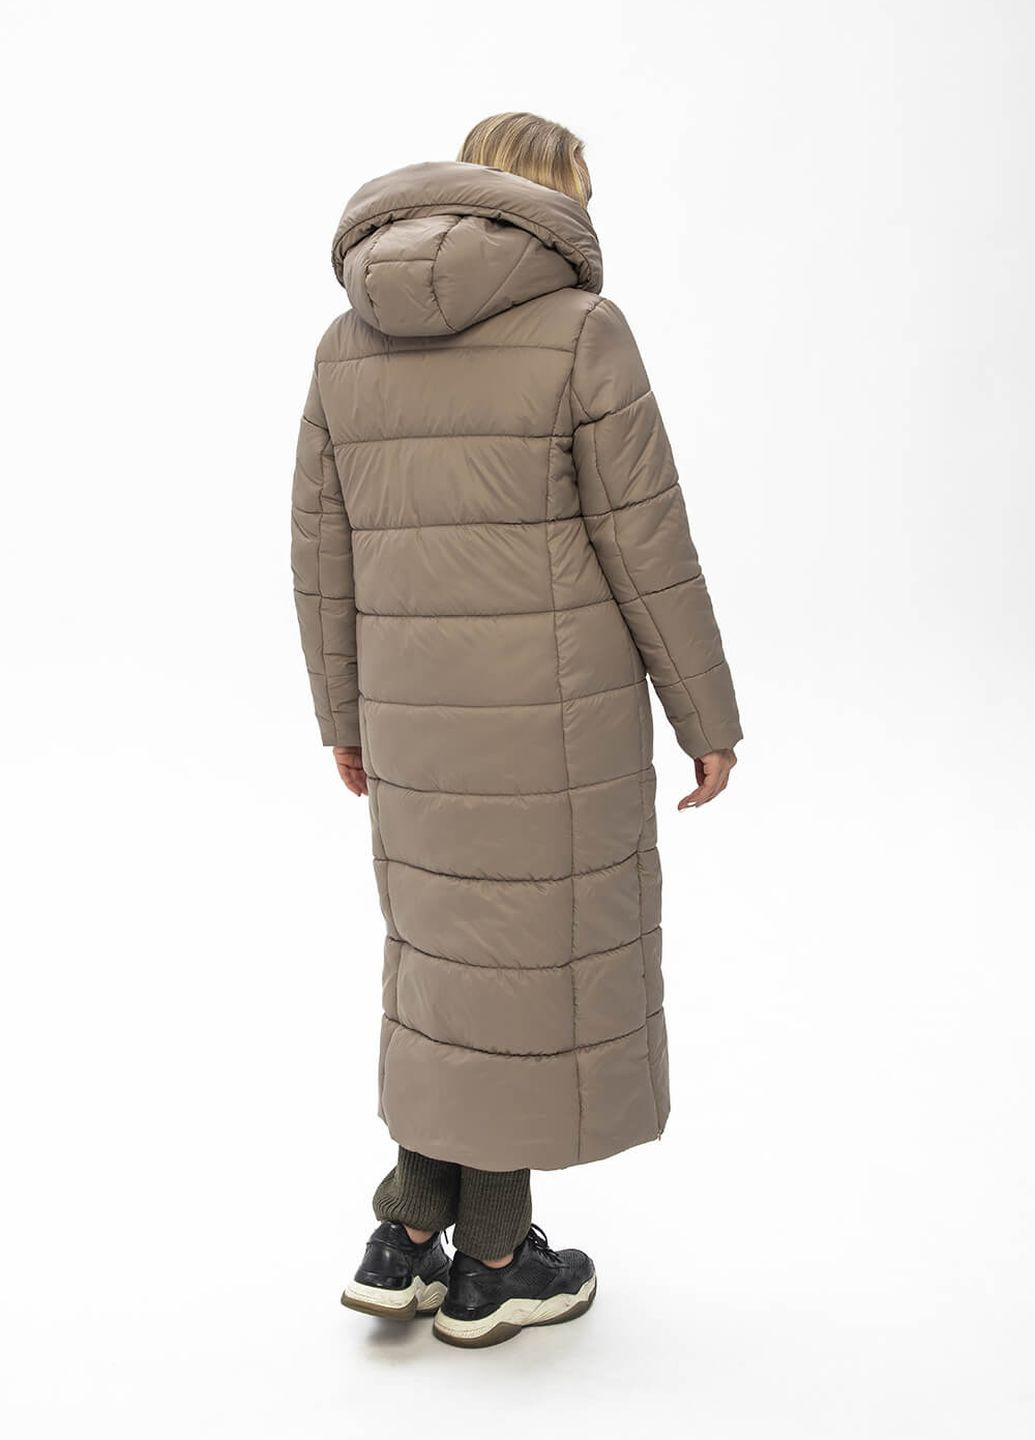 Бежевая зимняя куртка-пальто с капюшоном агата MioRichi